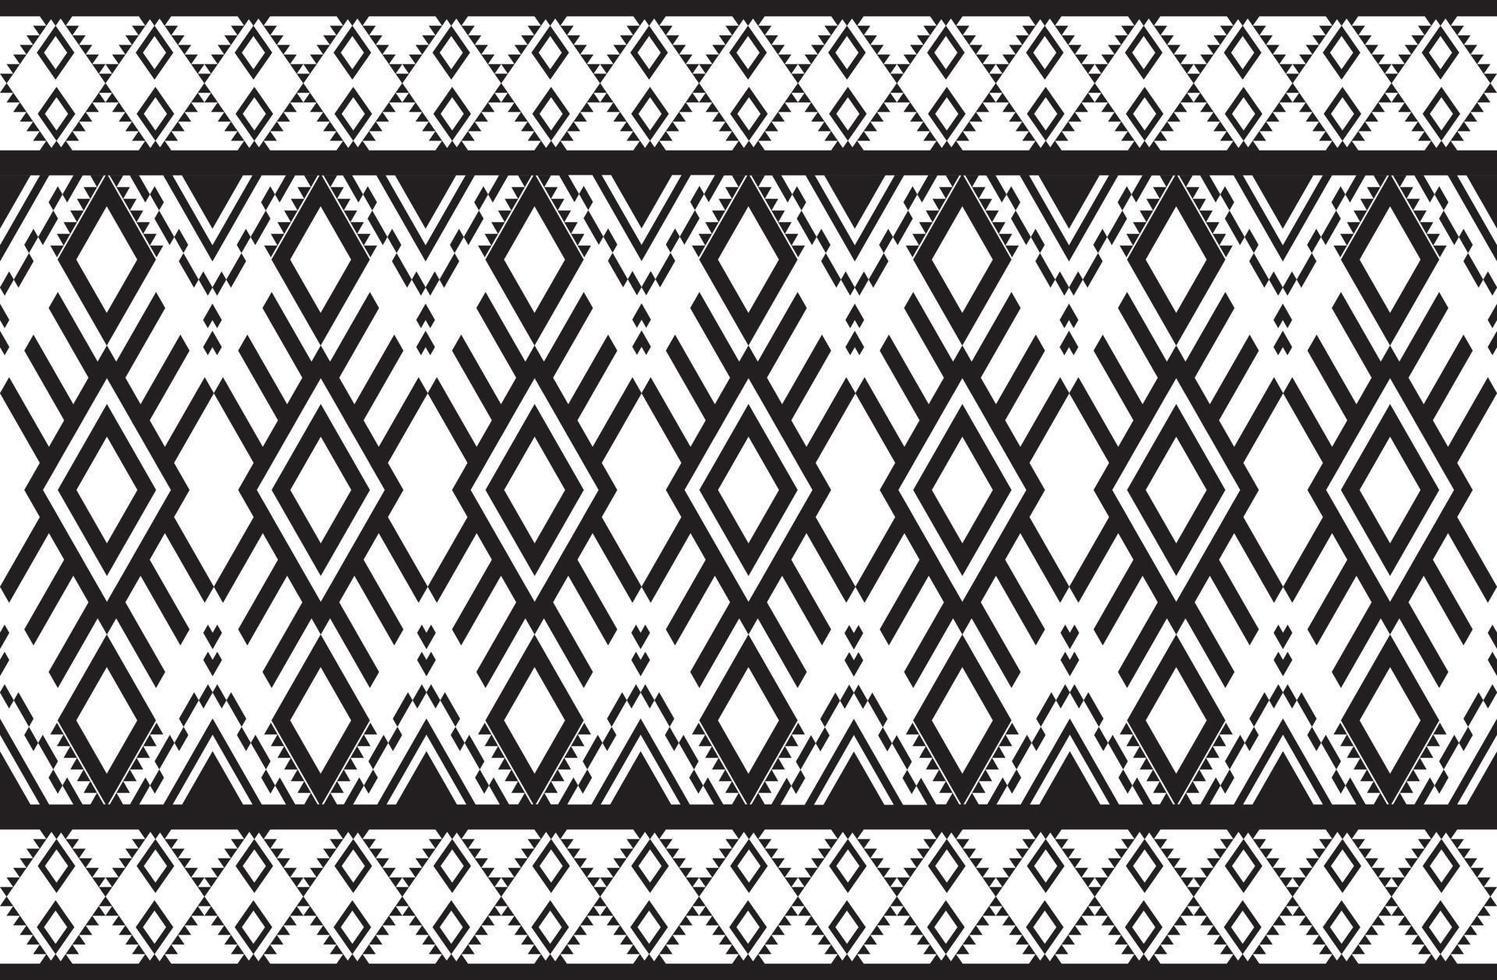 patrón de diseño geométrico tejido étnico oriental tradicional abstracto blanco y negro. para el estilo de bordado, cortina, fondo, alfombra, papel pintado, tela, envoltura, batik, tela, ilustración vectorial. vector